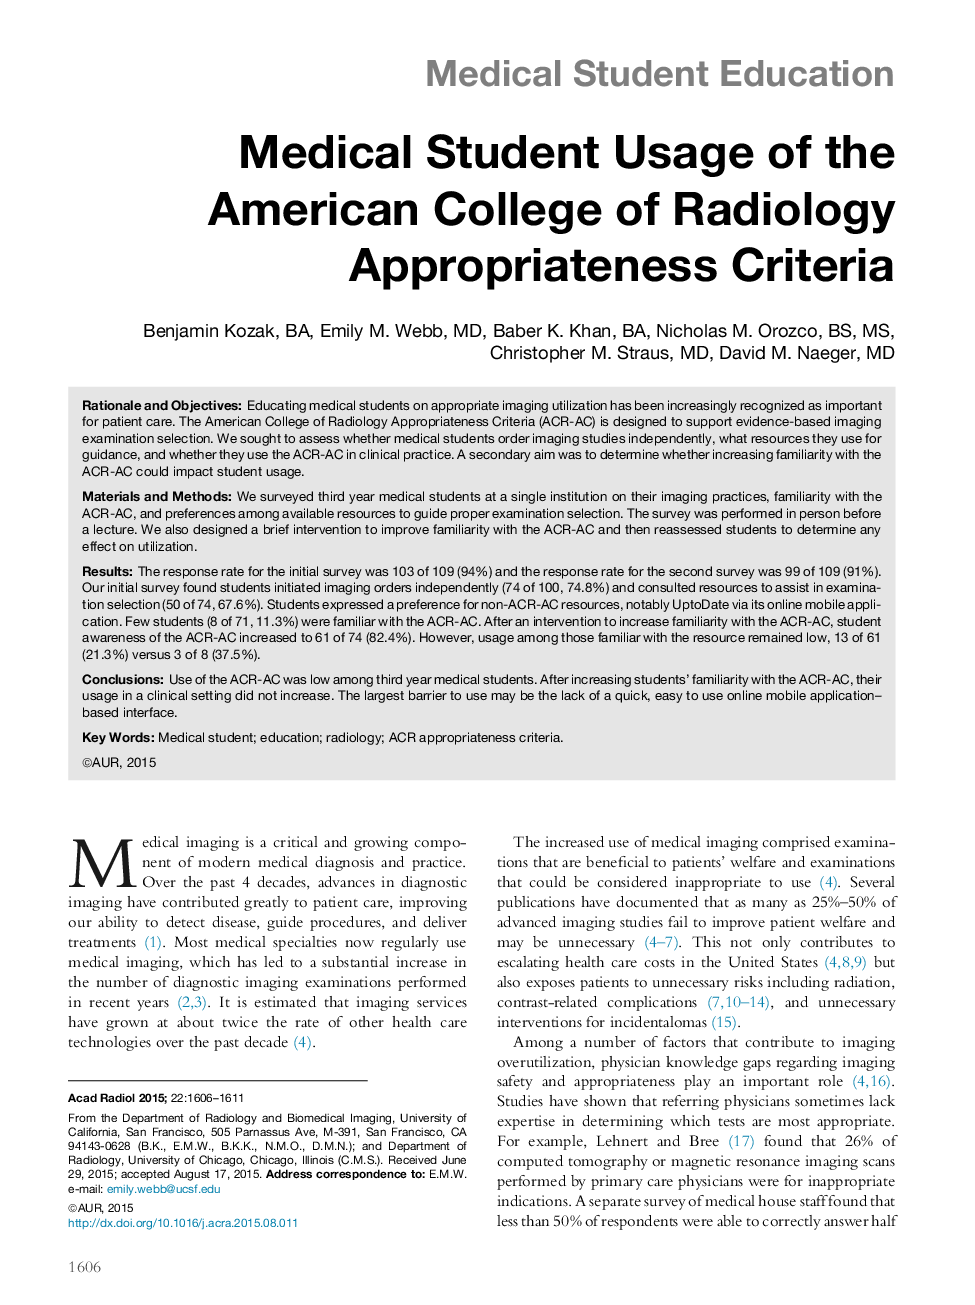 استفاده از دانشجوی پزشکی از کالج آمریکایی معیارهای پذیرش رادیولوژی 